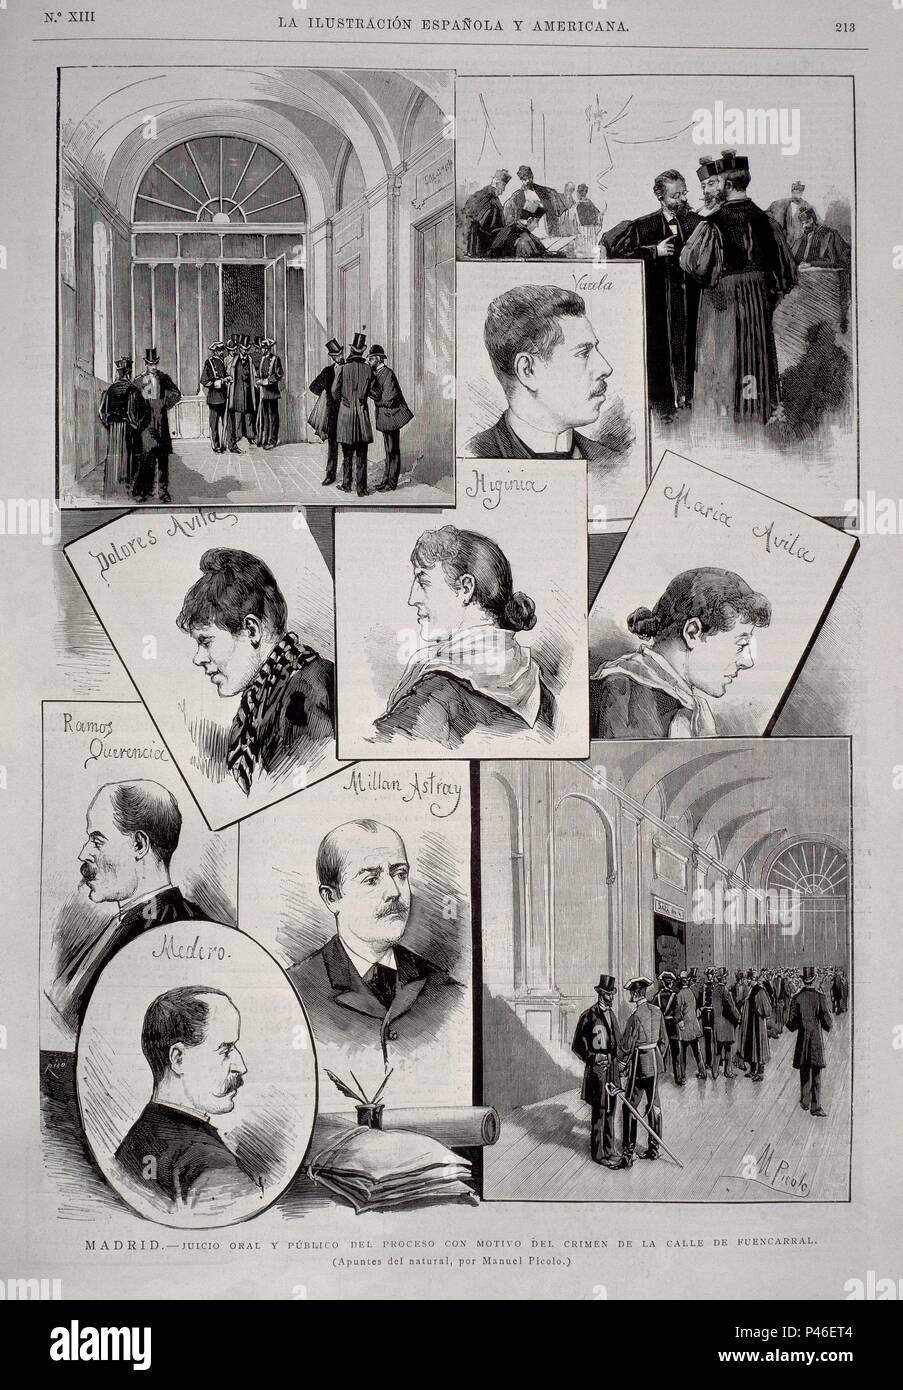 I ESPANOLA Y A ABRIL 1889 (CRIMEN). Author: Manuel Picolo López (1855-1912). Location: BIBLIOTECA NACIONAL-COLECCION, MADRID, SPAIN. Stock Photo